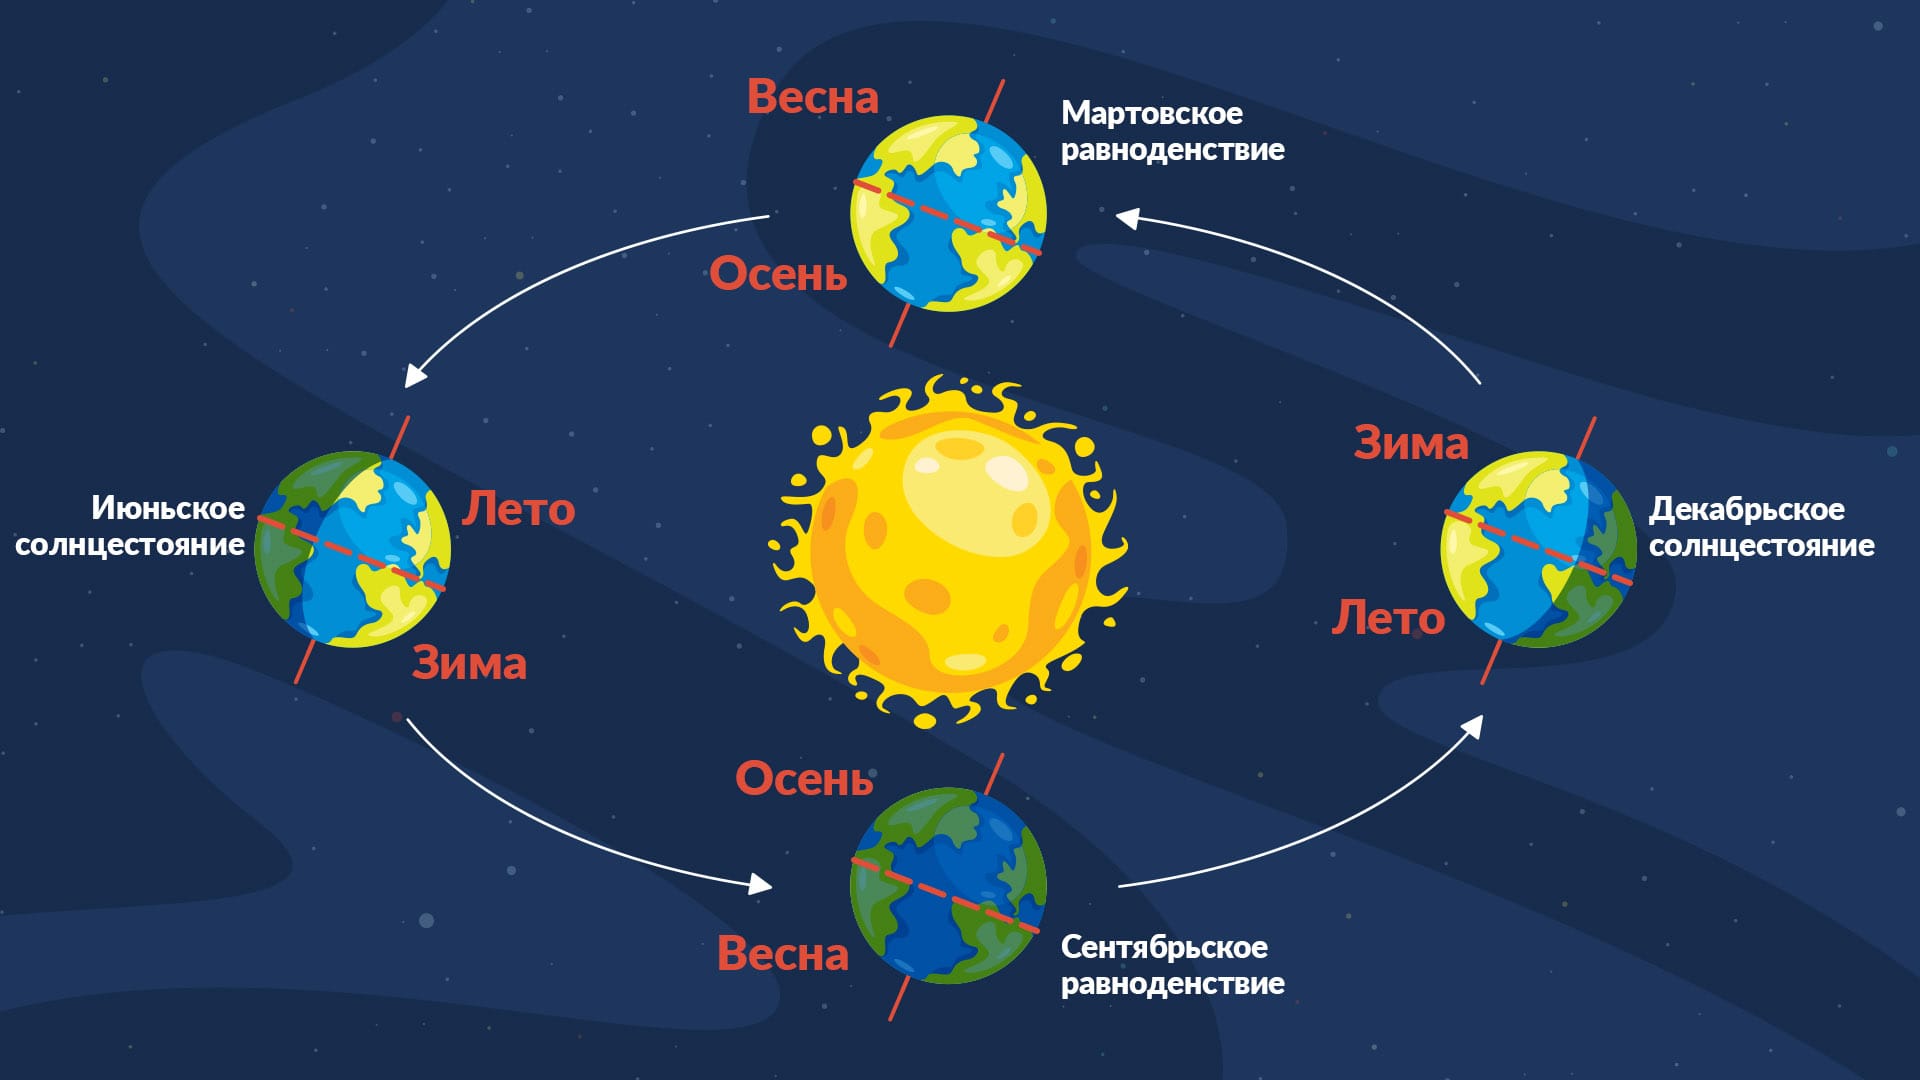 Схема равноденствия и солнцестояния